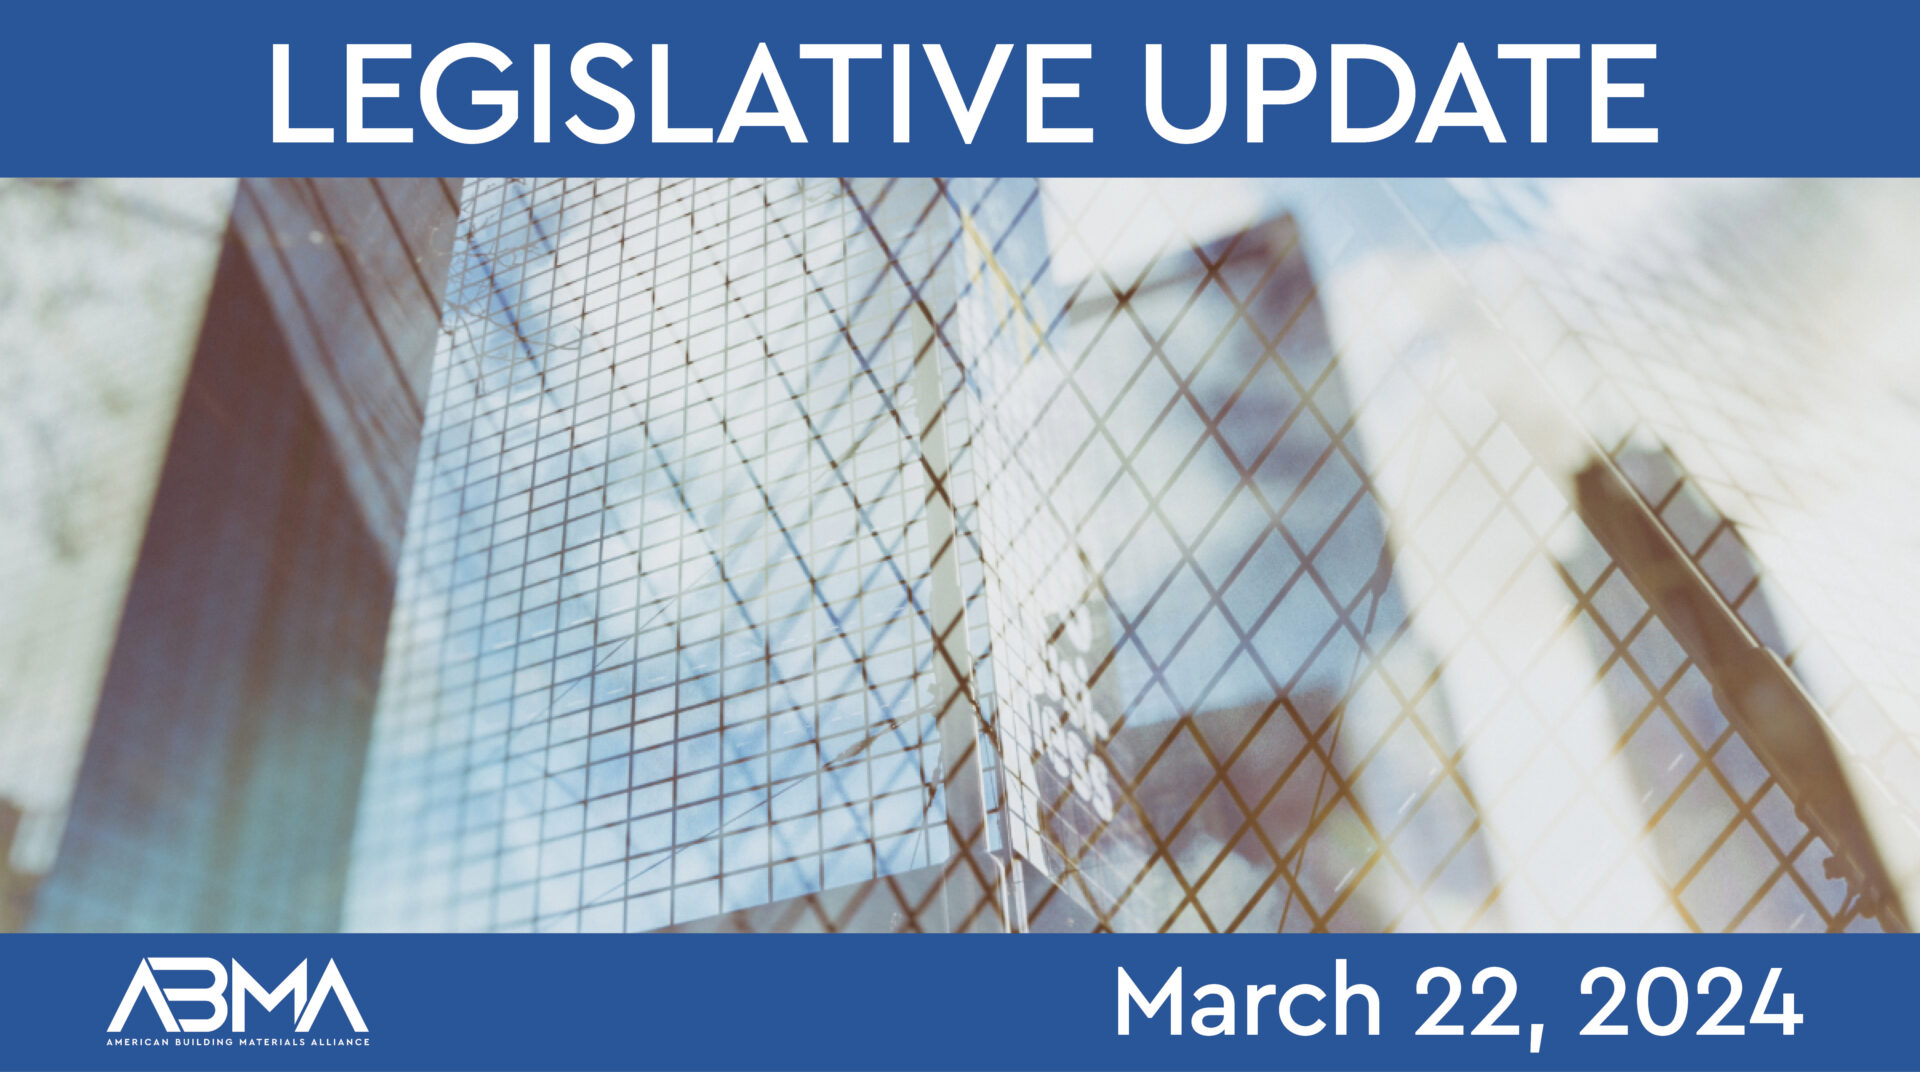 ABMA Legislative Update March 22, 2024